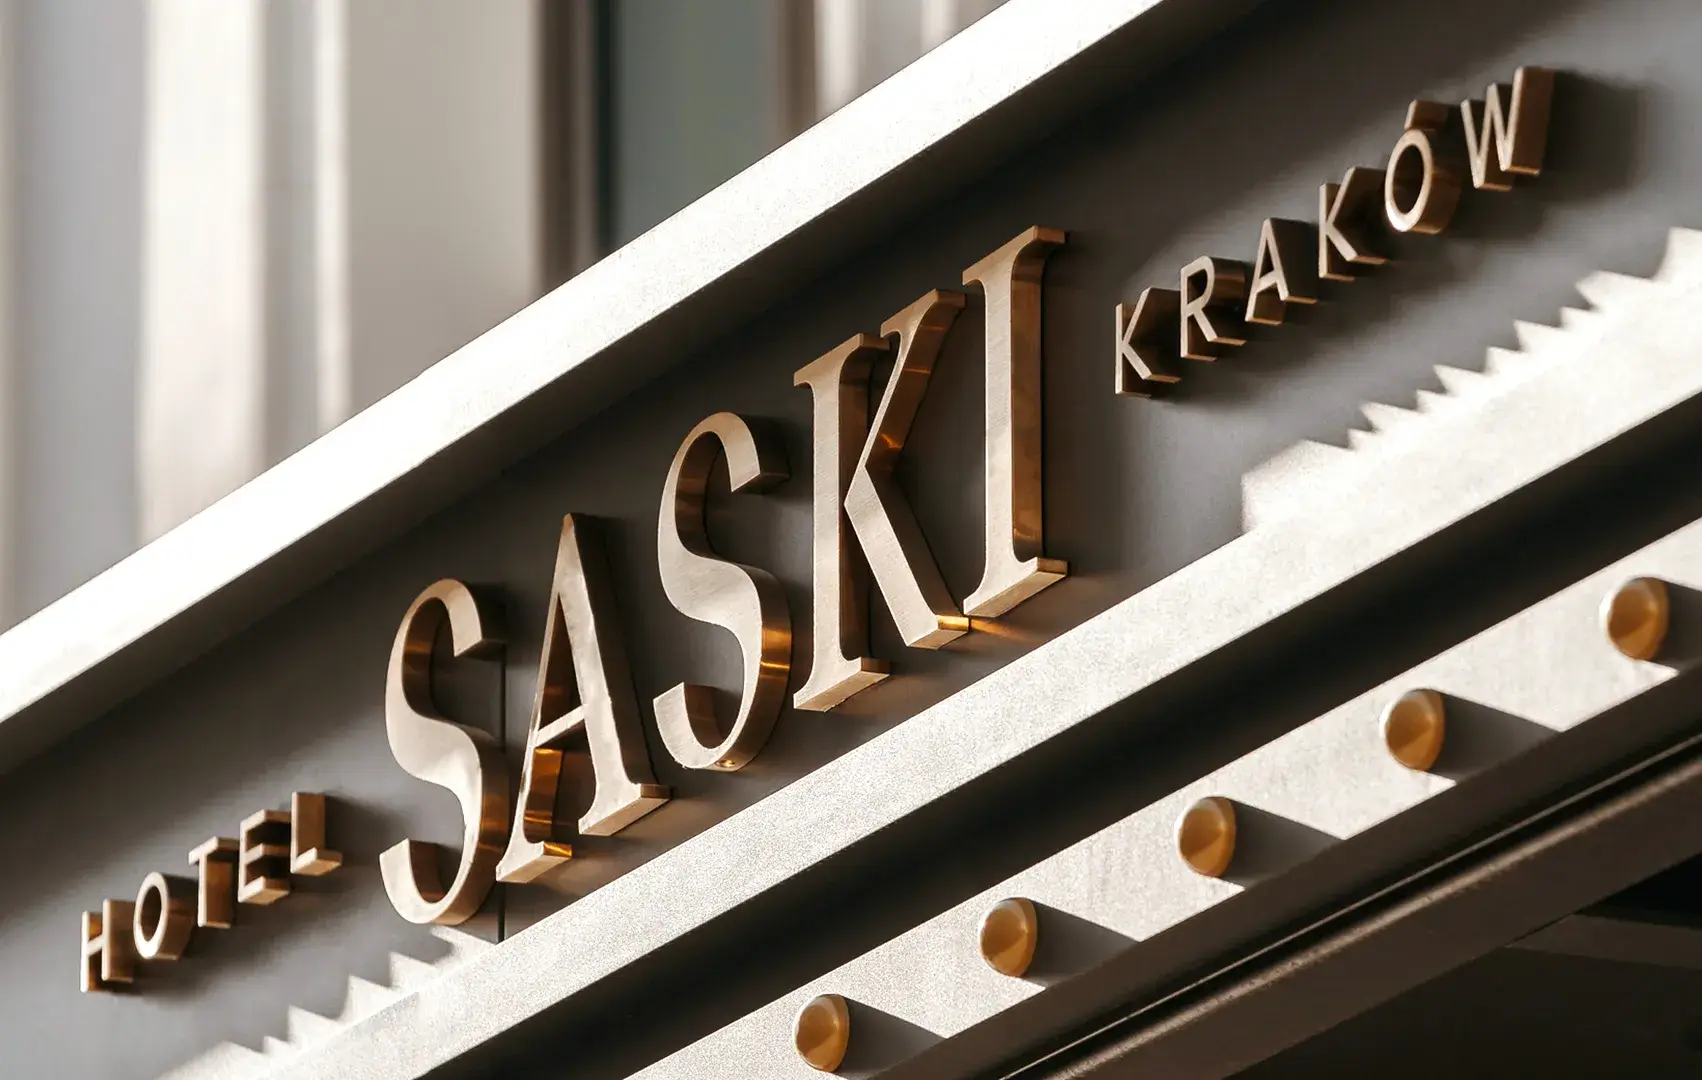 Lettere in acciaio inox spazzolato oro all'esterno dell'edificio dell'hotel Saski